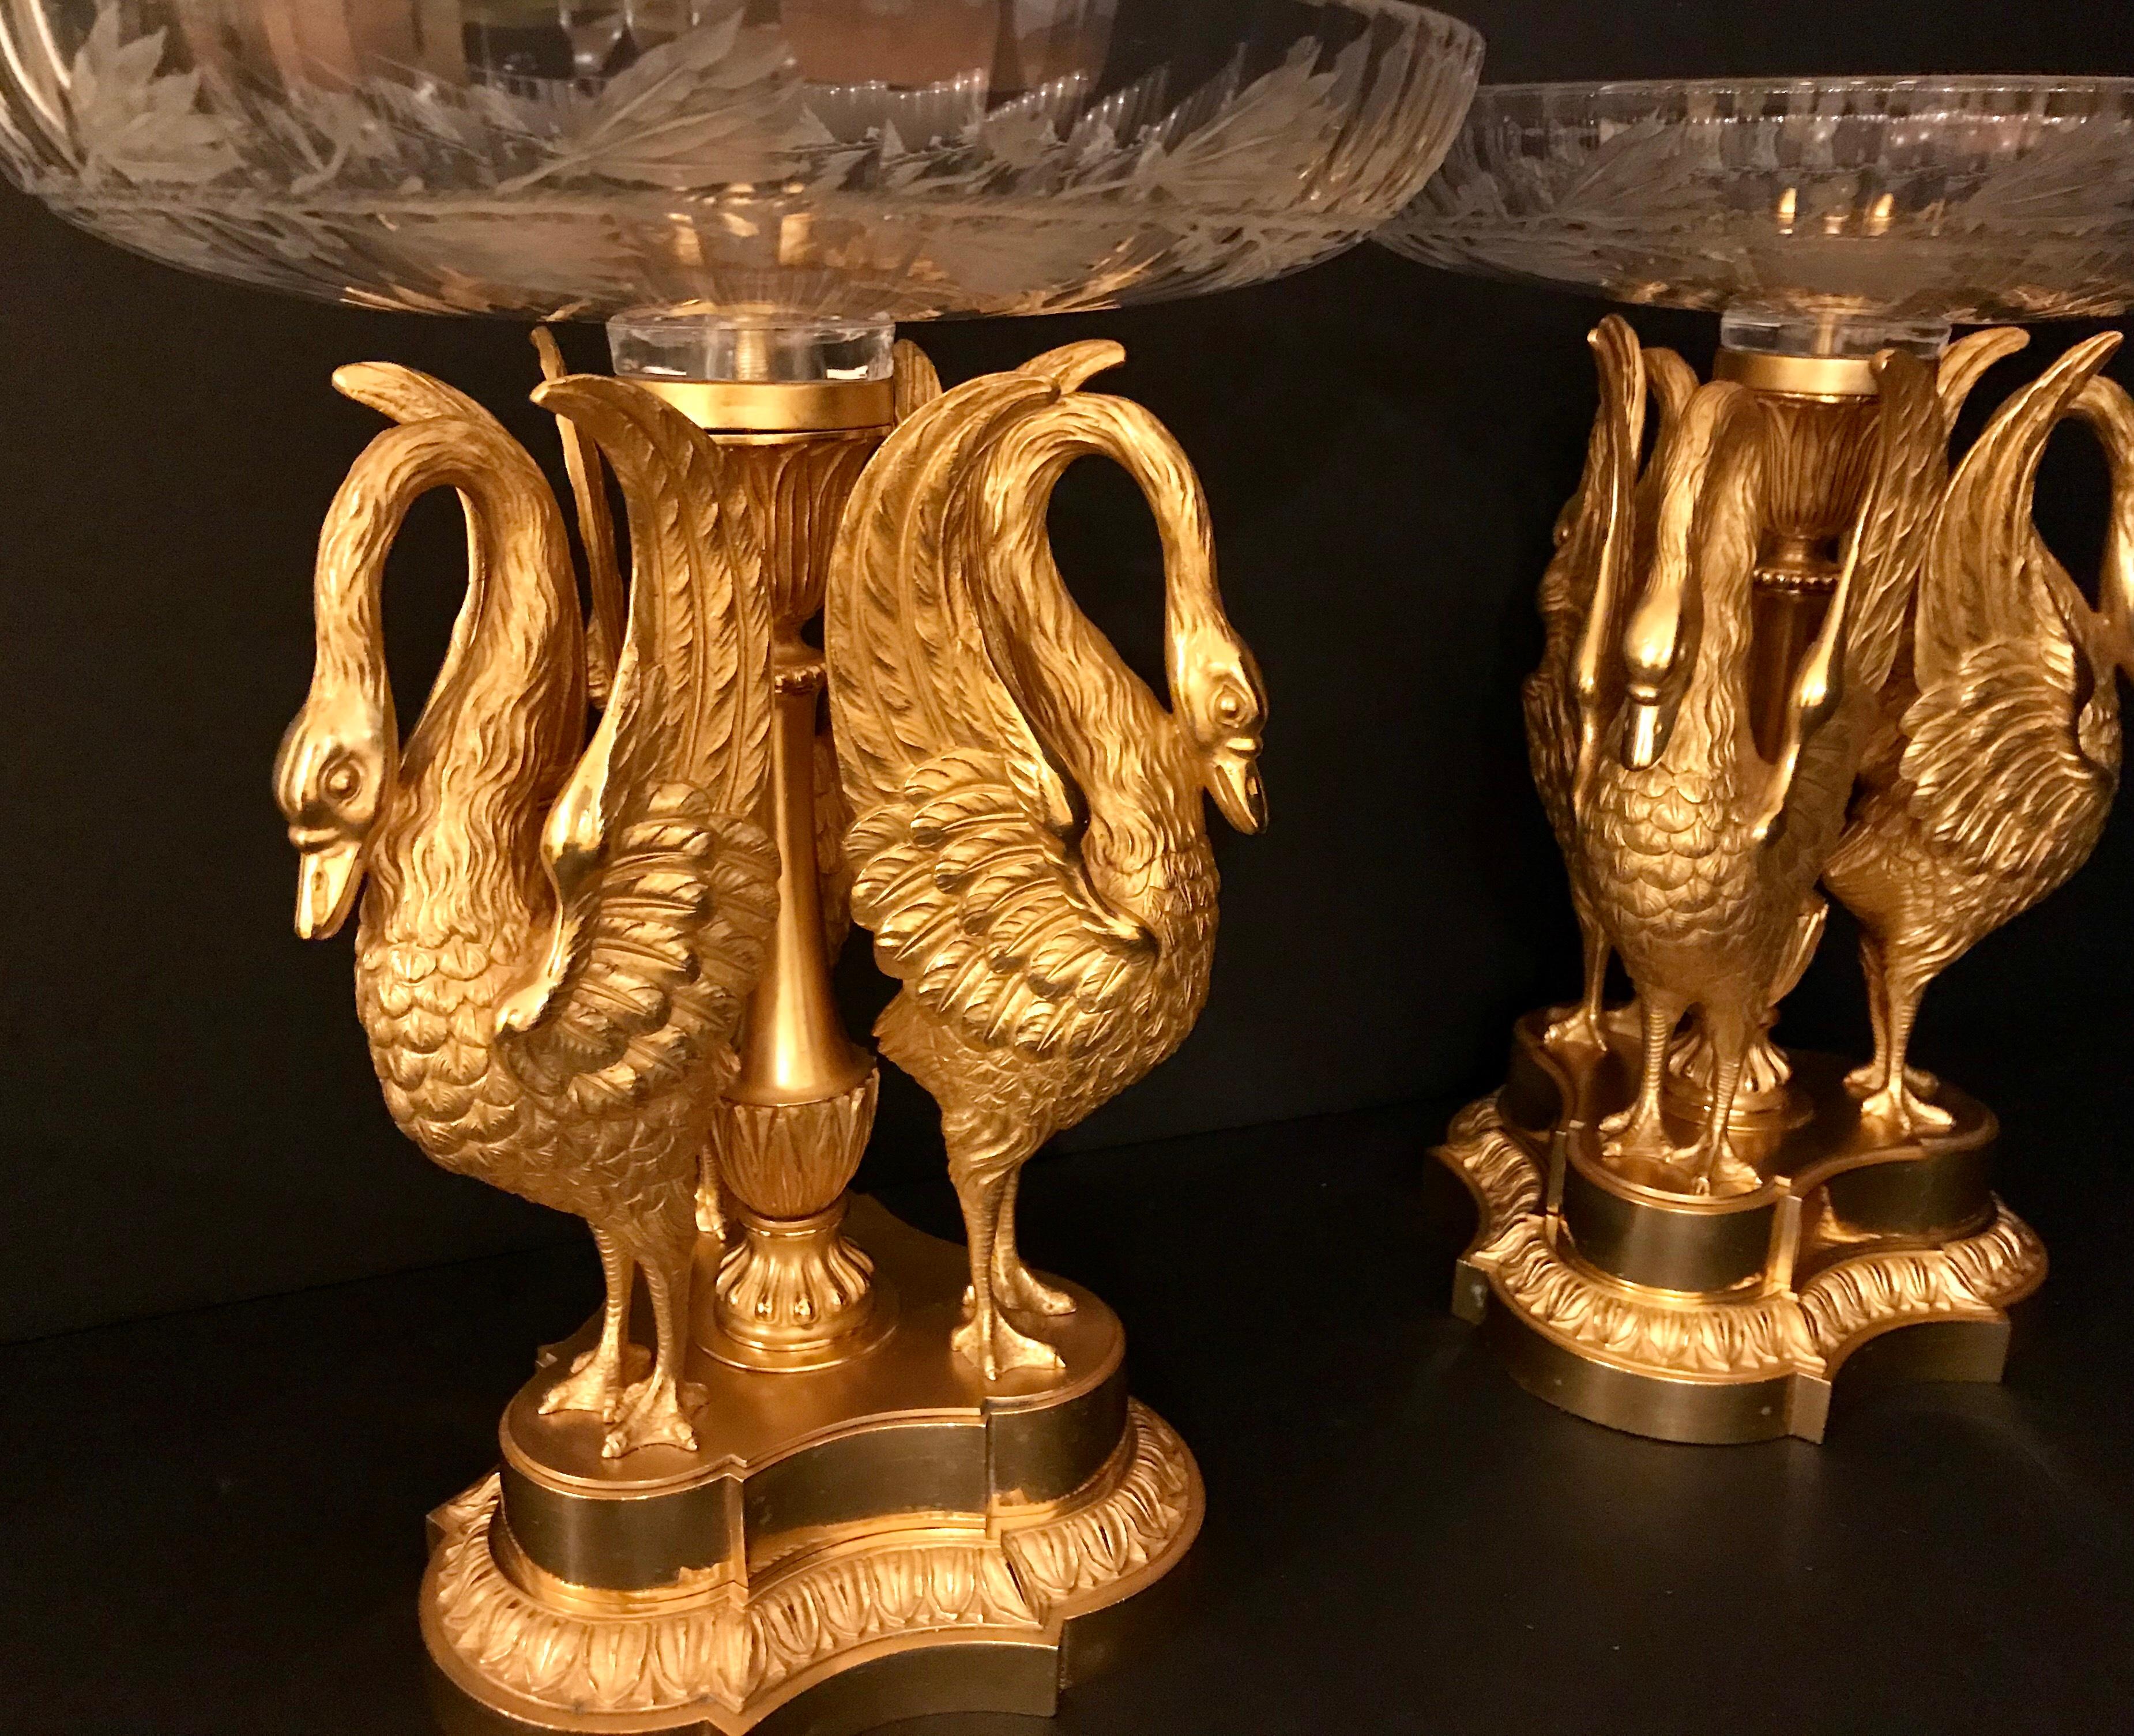 Magnifique paire de centres de table en bronze doré de Russie et cristal de Baccarat. Les tazzas amovibles de Baccarat, gravés d'un motif de couronne de laurier profondément taillé, reposent sur une sculpture en bronze doré de trois cygnes finement